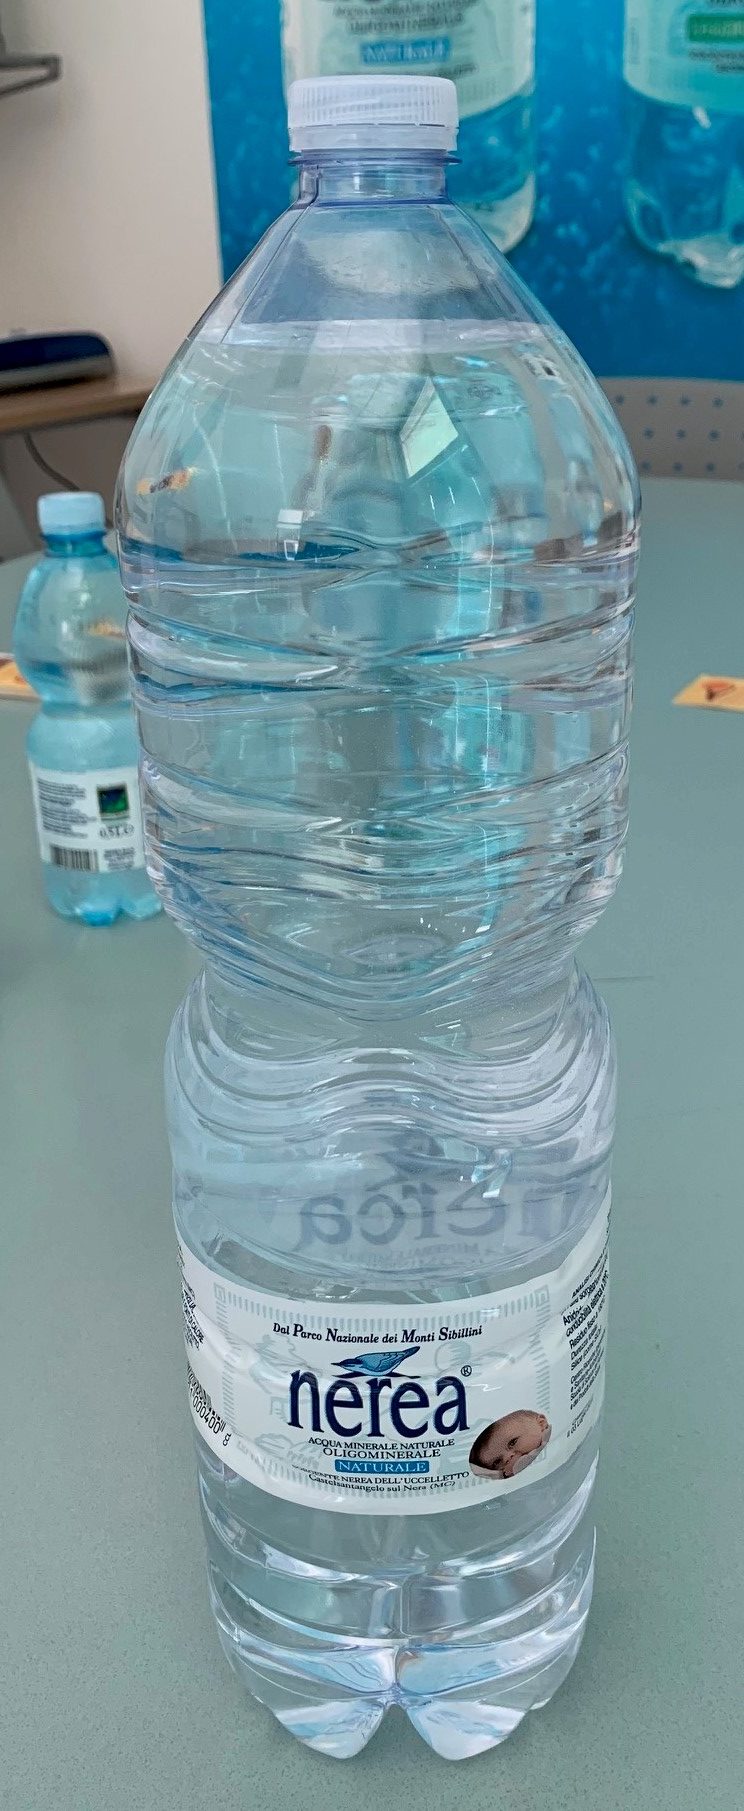 Acqua minerale naturale 2 litri - Conai - Consorzio Nazionale